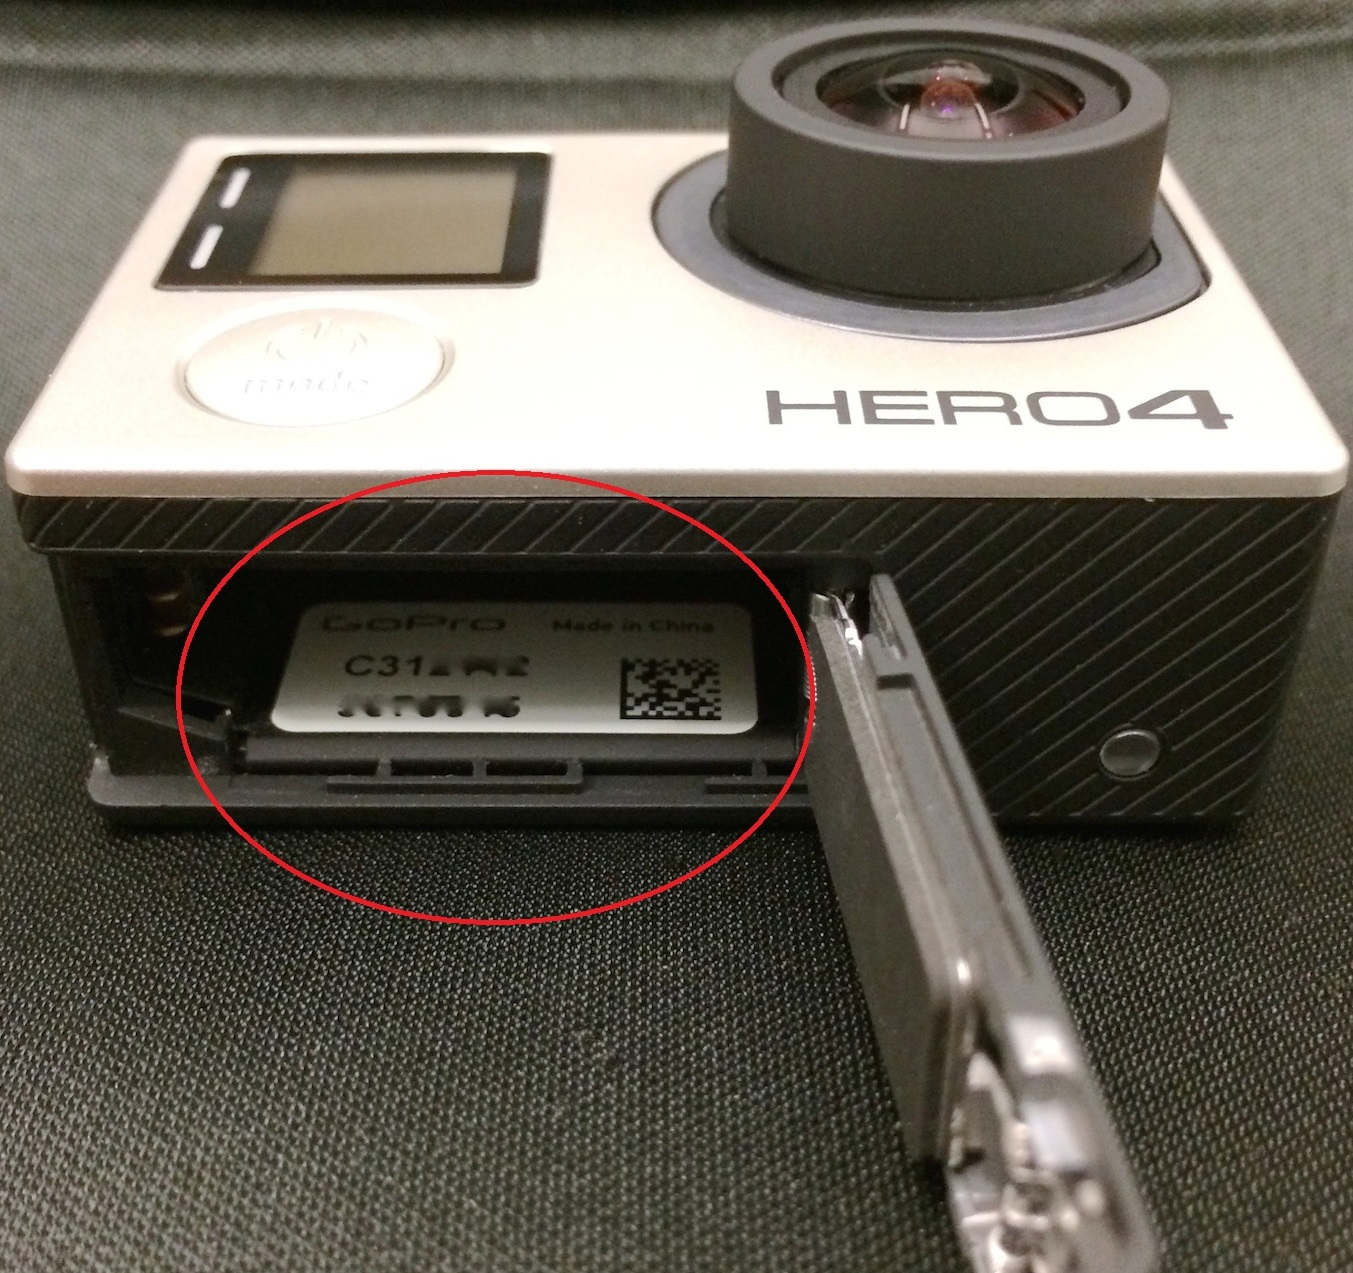 seryjny: - Kamery GoPro (numer składa się z 14 cyfr i liter) - Akcesoria premium GoPro LCD Touch BacPac, Battery BacPac ( numer składa się z 14 cyfr i liter) - Produkty DJI Phantom 1, 2, 3, Phantom